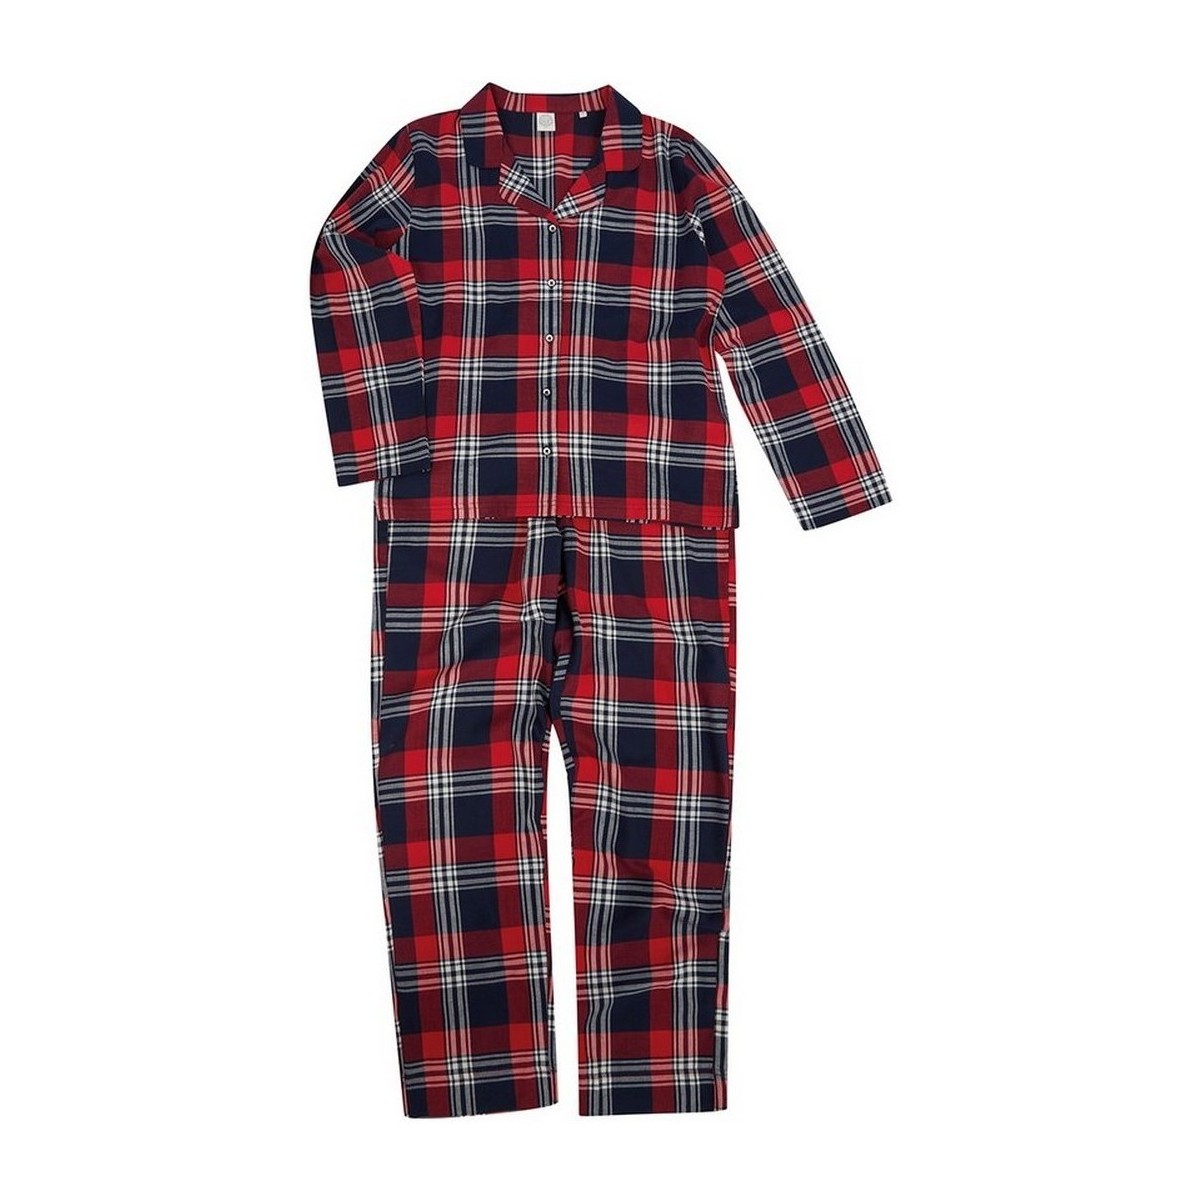 Vêtements Femme Pyjamas / Chemises de nuit Sf RW8219 Rouge